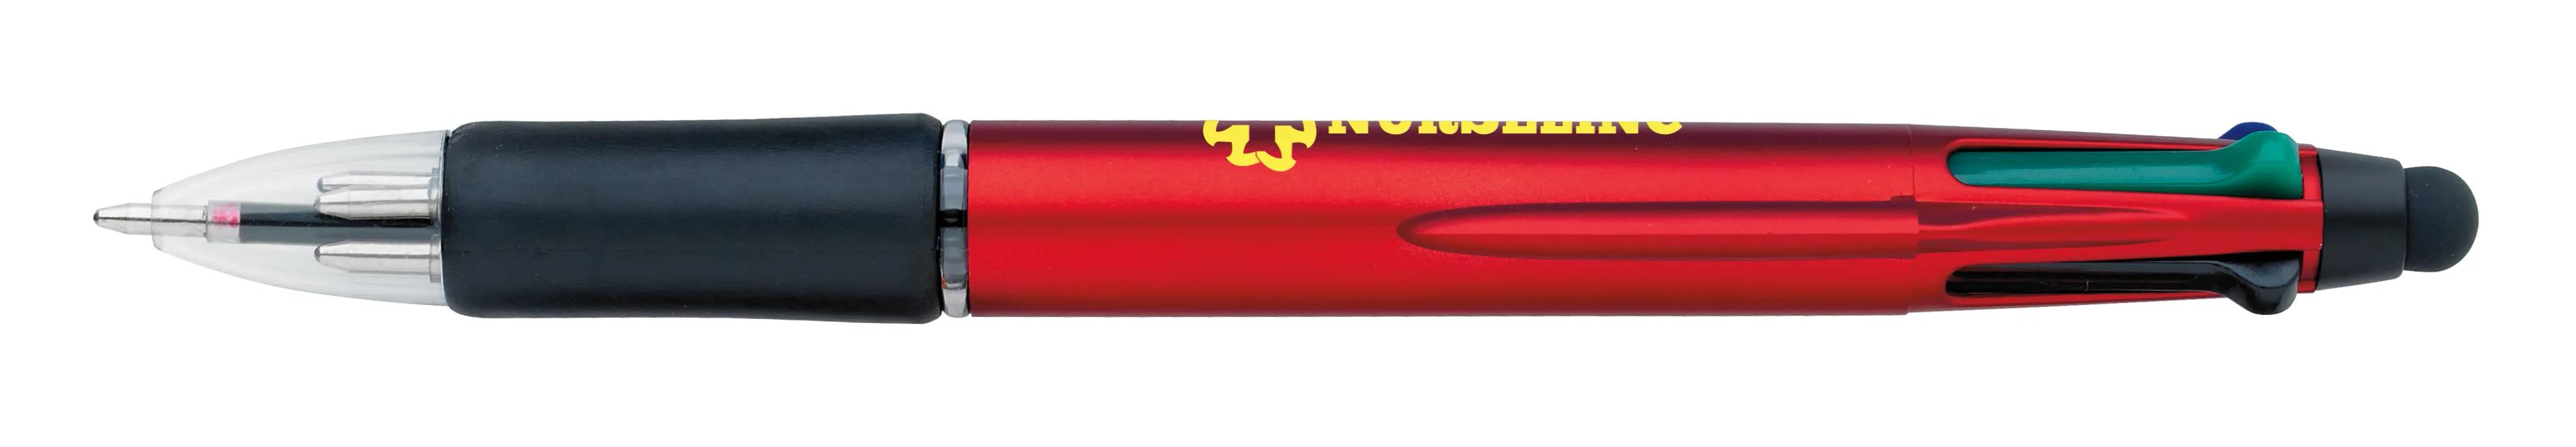 Orbitor Metallic Stylus Pen 55 of 56